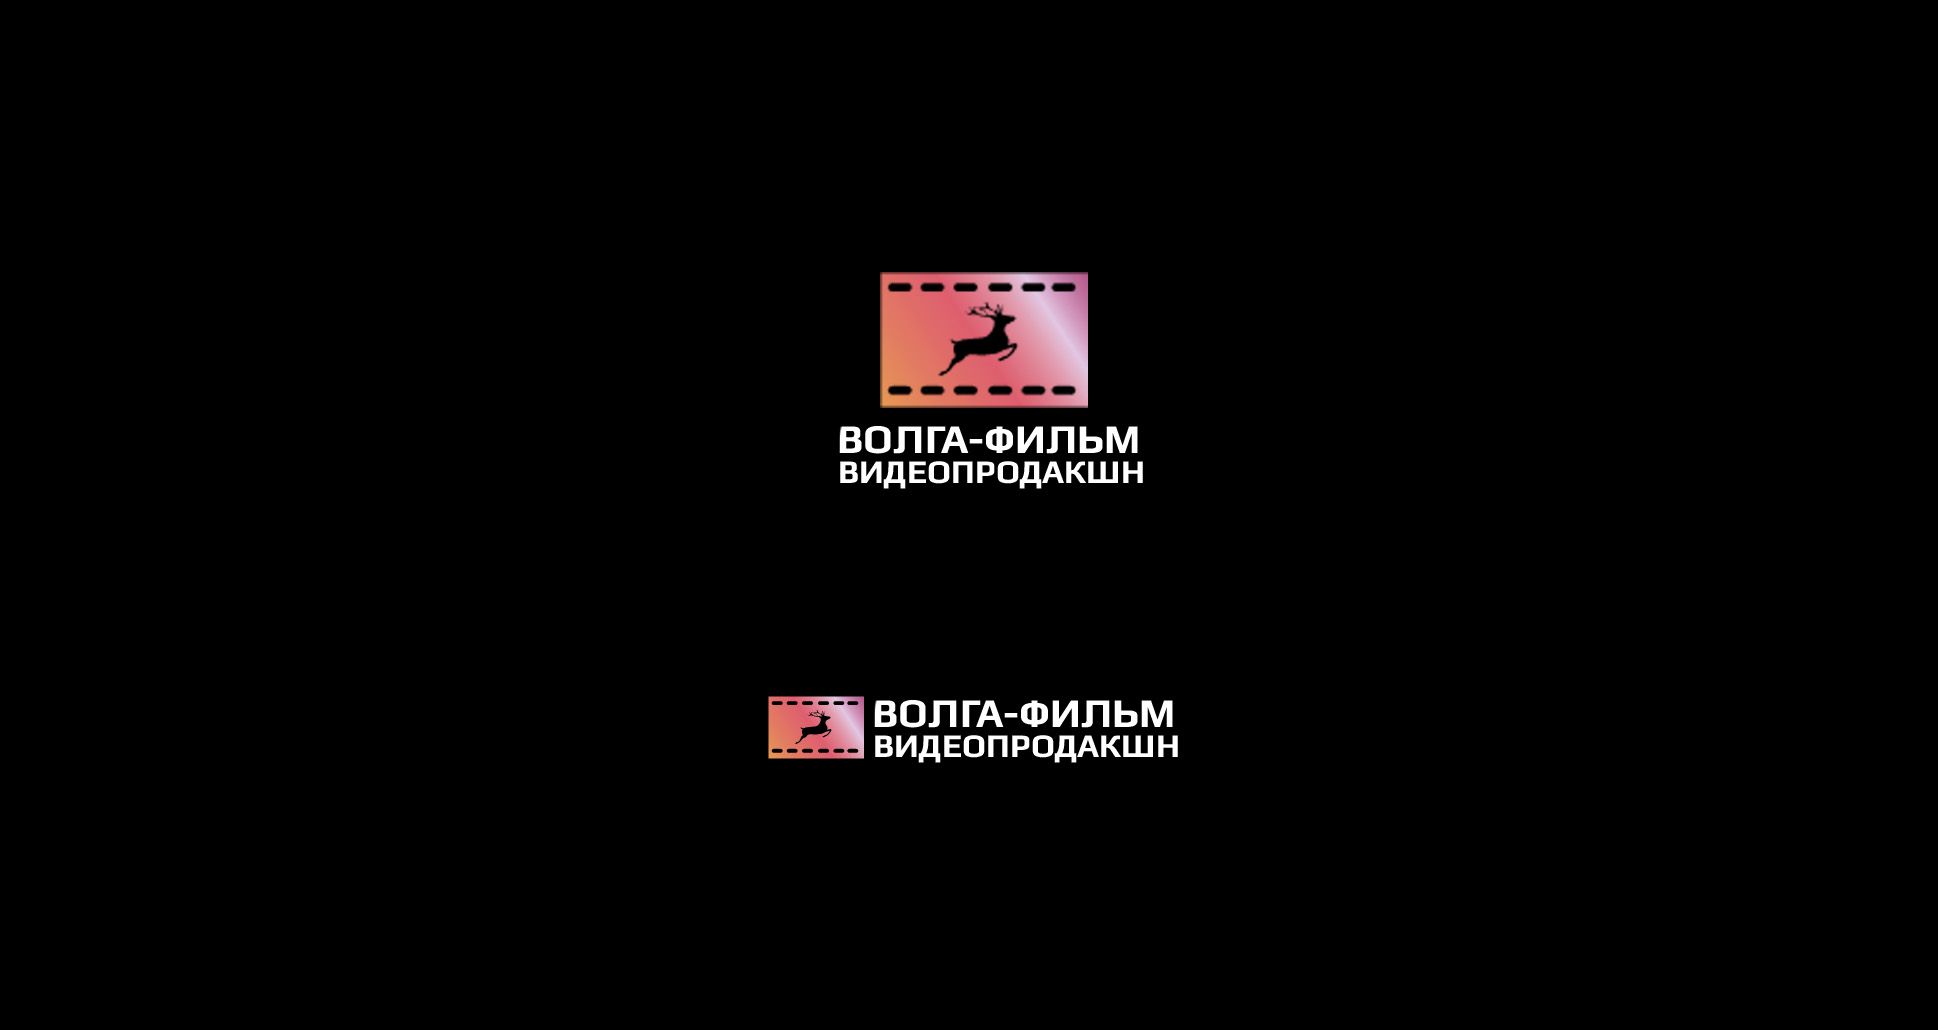 Лого и фирменный стиль для Волга-фильм видеопродакшн - дизайнер SmolinDenis